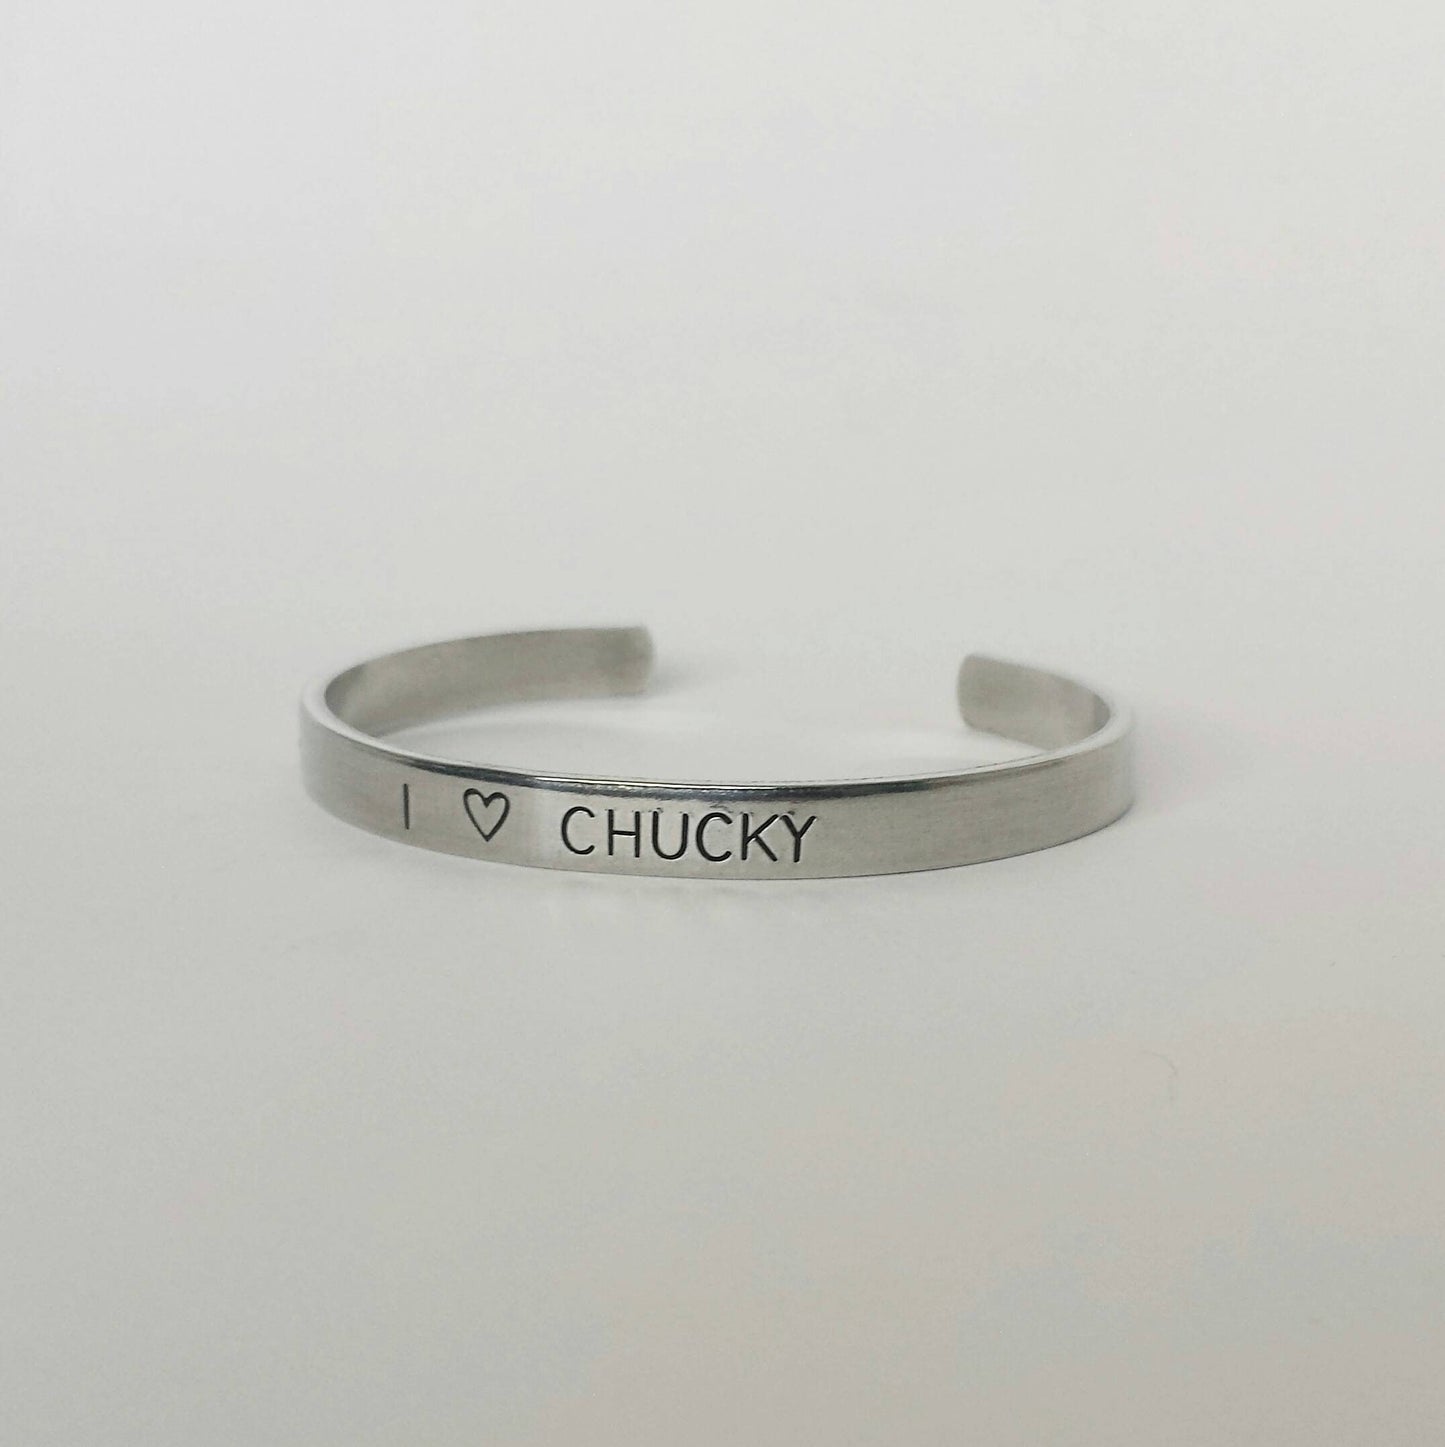 I 🖤 Chucky Cuff Bracelet